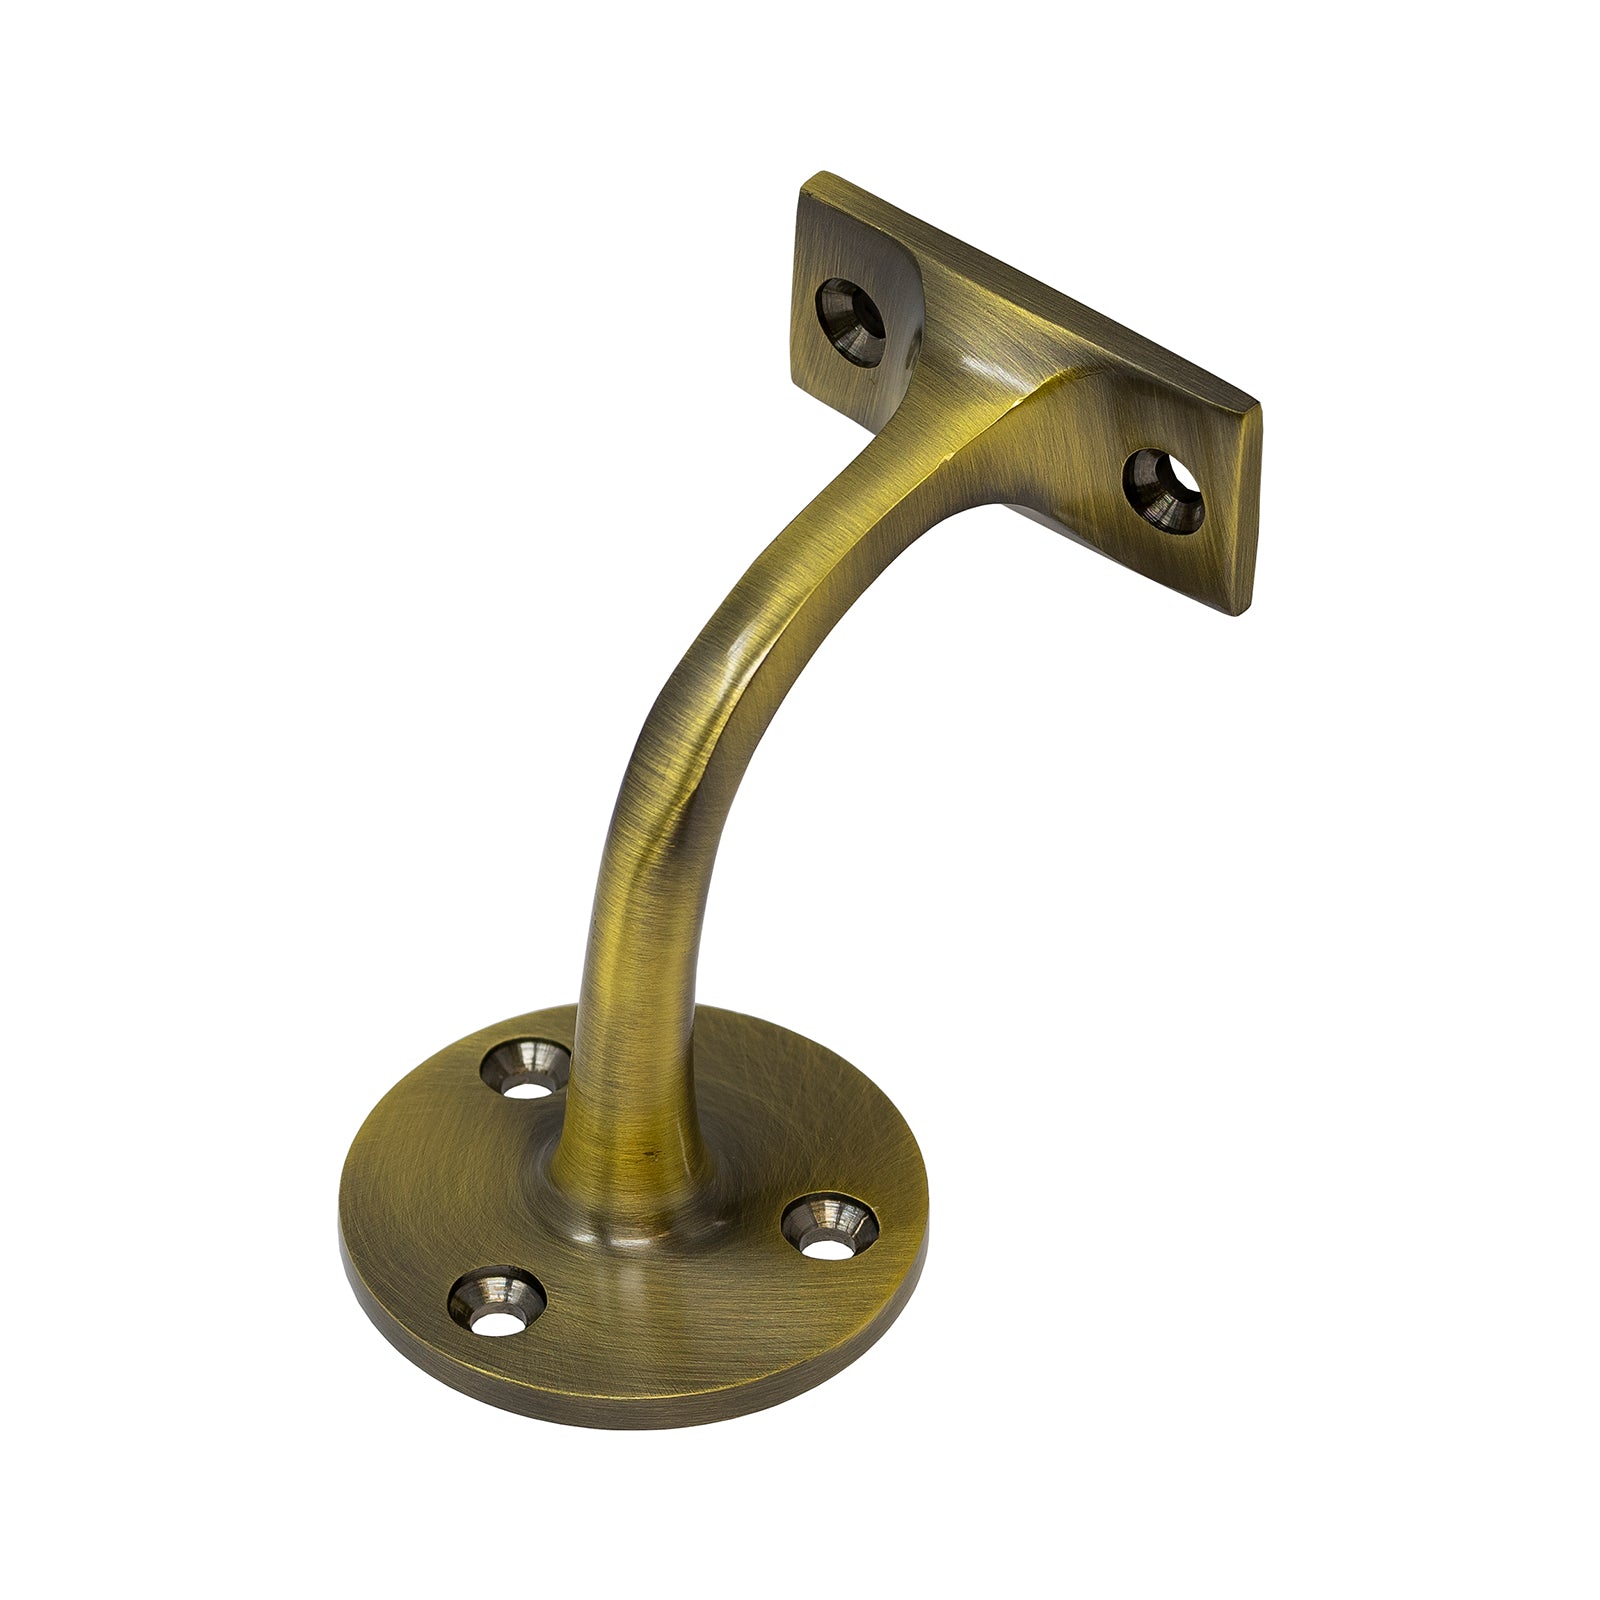 Antique brass handrail bracket